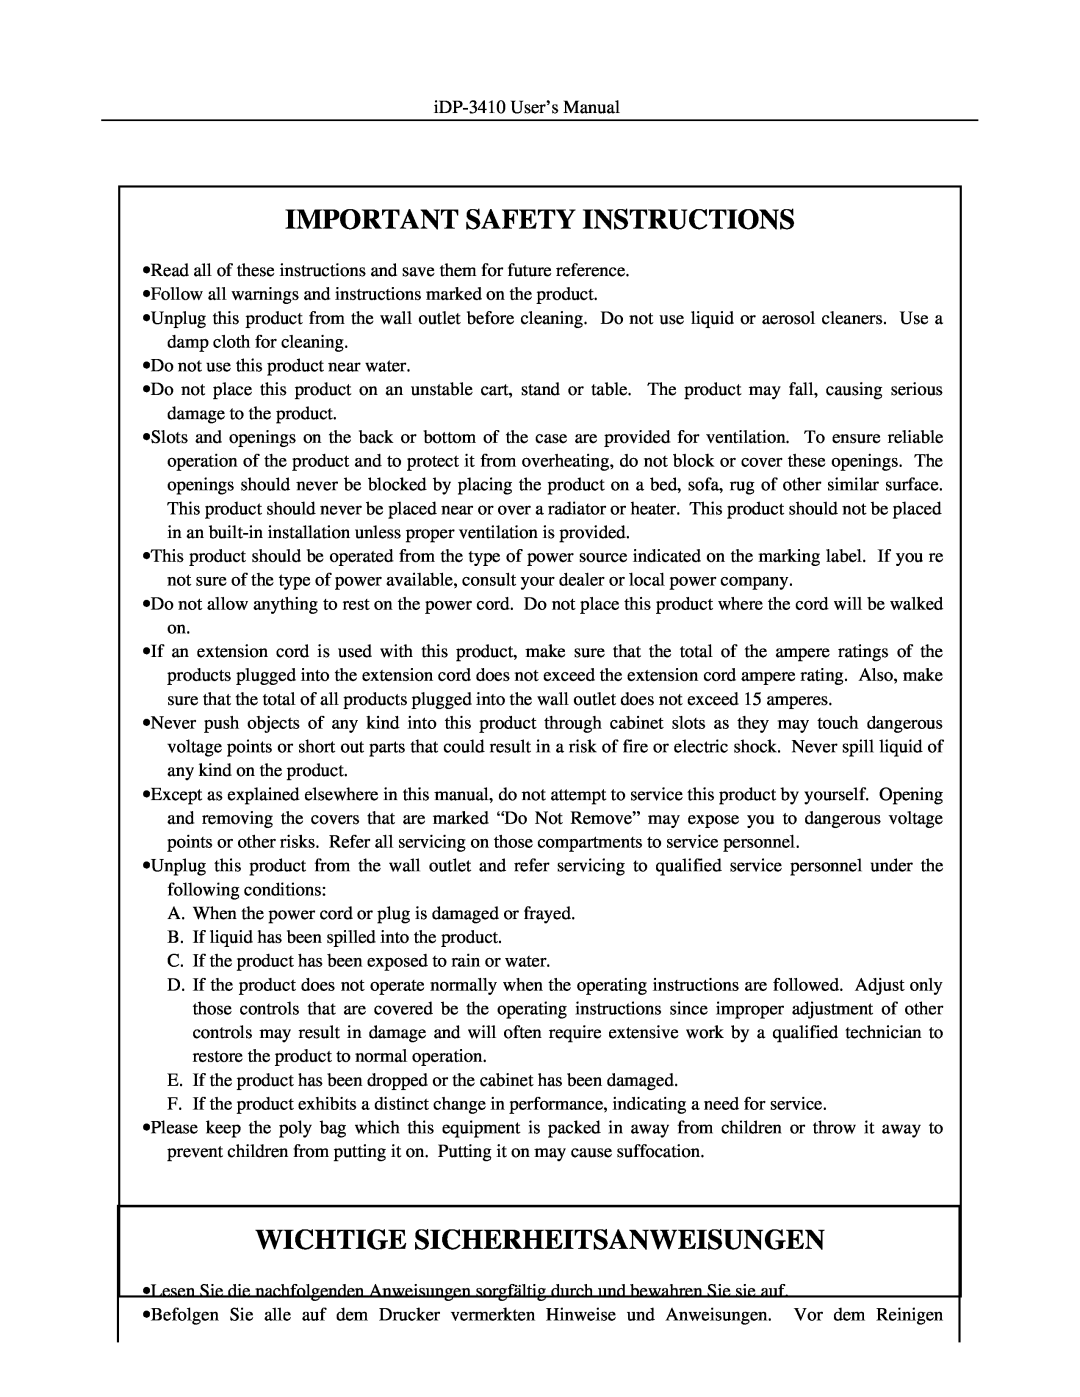 Addlogix iDP-3410 user manual Important Safety Instructions, Wichtige Sicherheitsanweisungen 